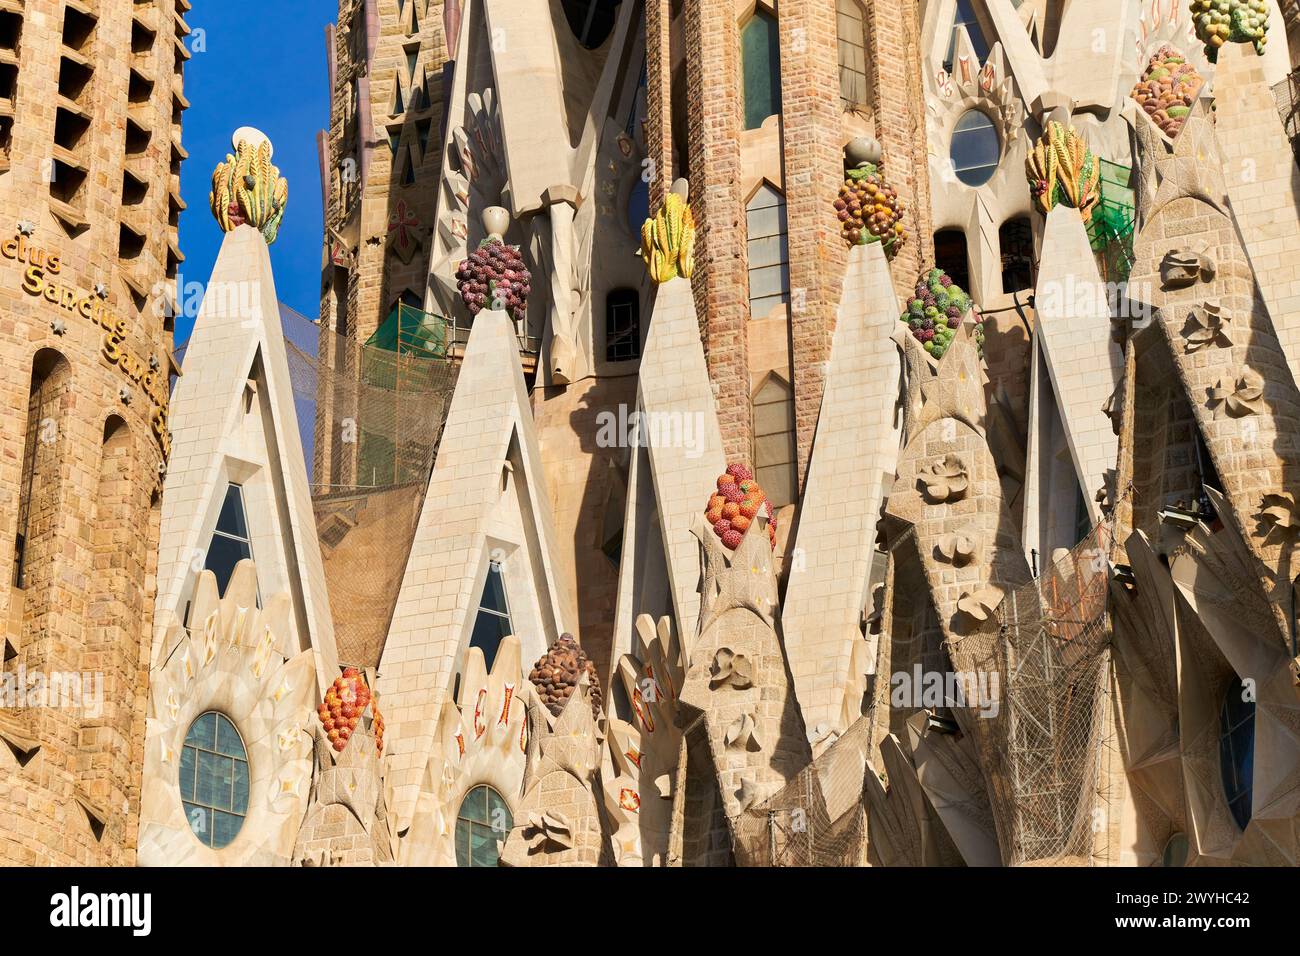 Fachada de la Pasión, Basilique de la Sagrada Familia. Barcelone. Espagne.la basilique et église expiatoire de la Sainte famille est une grande église catholique romaine de Barcelone, conçue par l'architecte espagnol catalan Antoni Gaudí (18521926). Banque D'Images